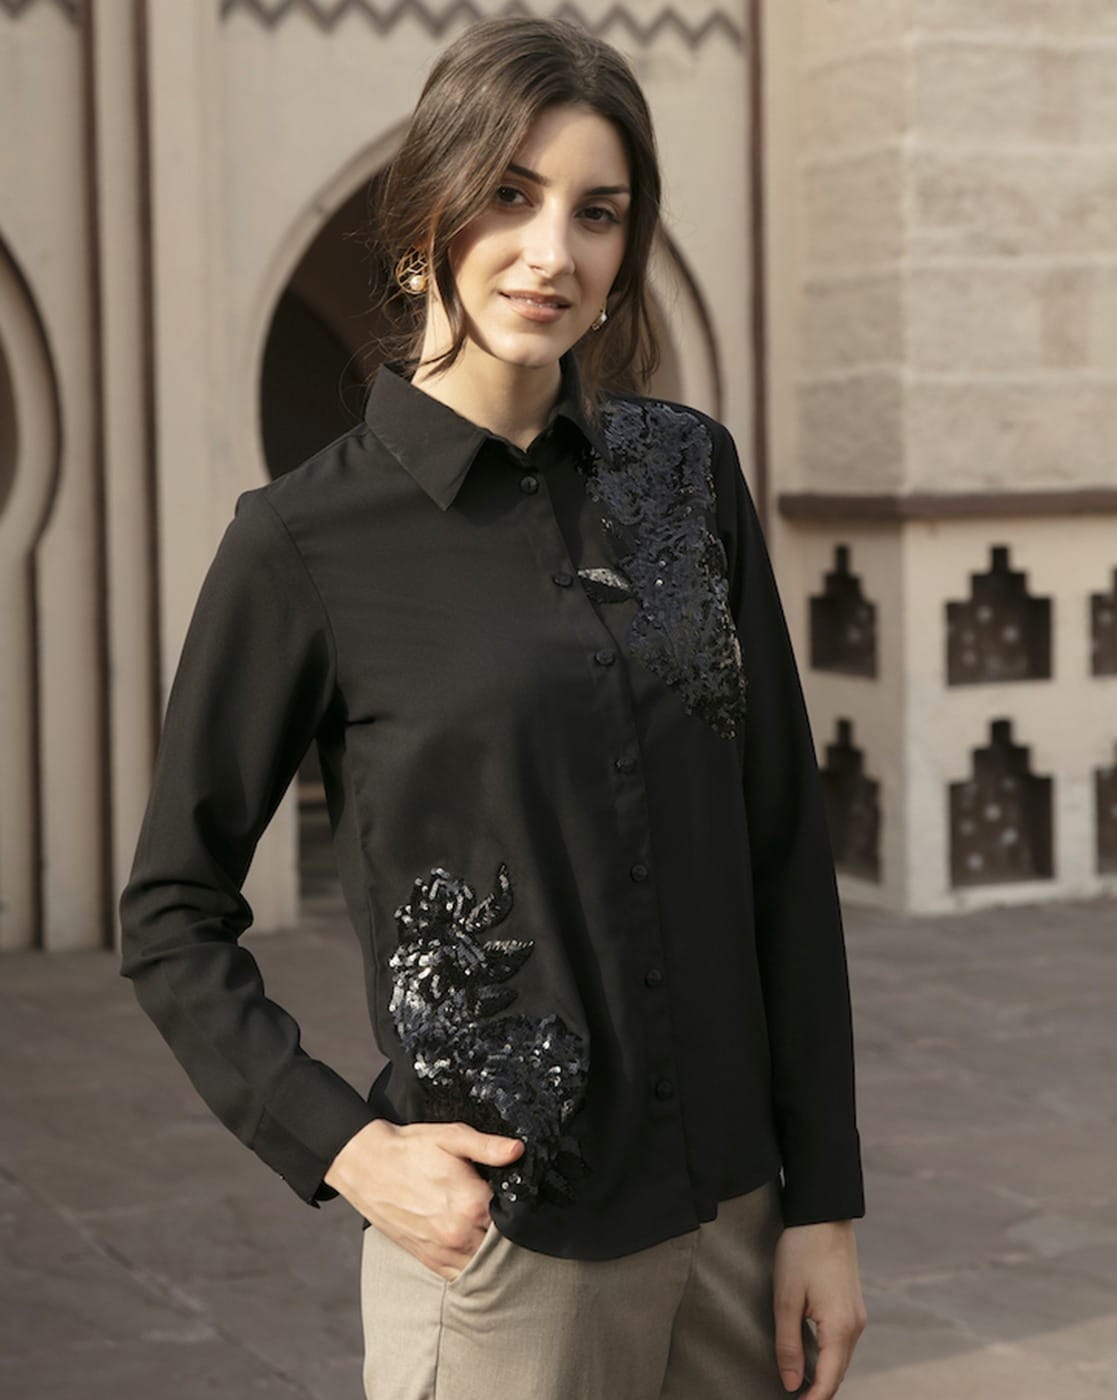 Embellished Shirt M / Black / Regular Fit